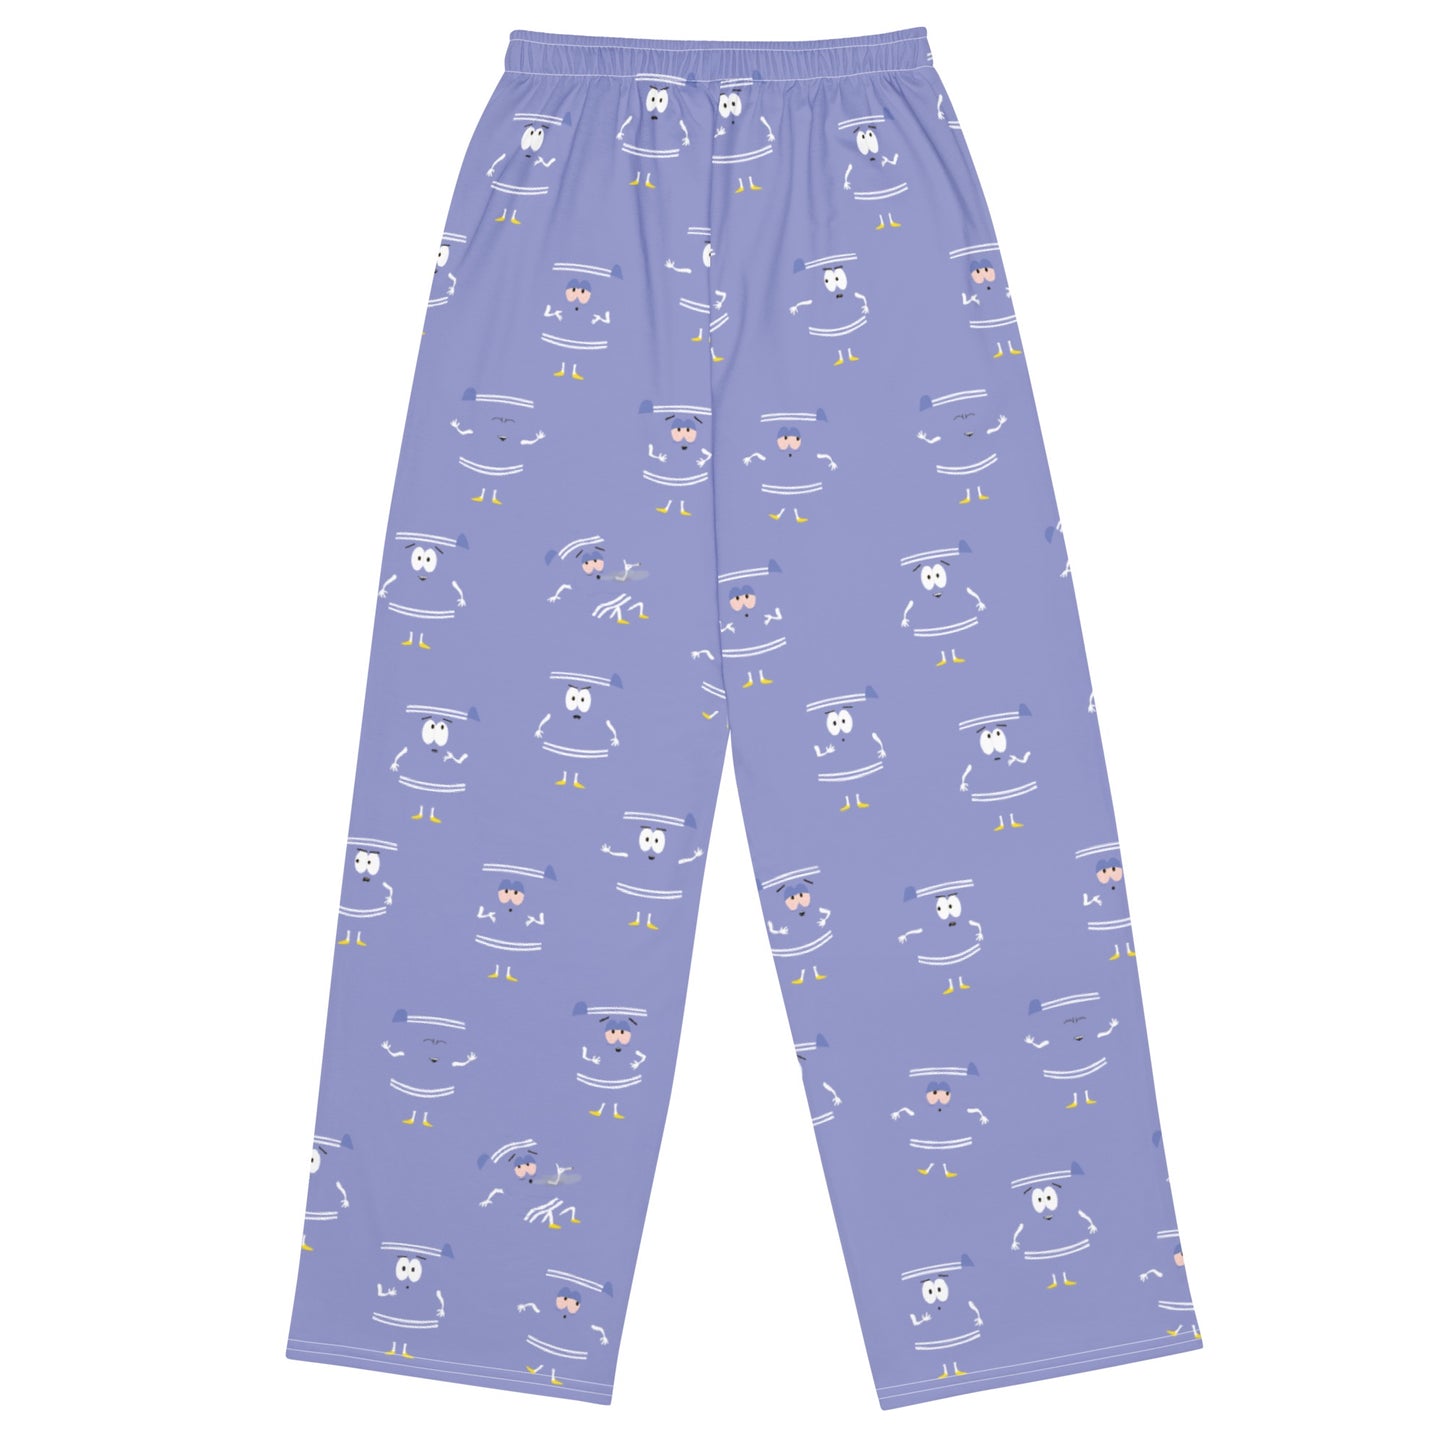 South Park Pantalon Towelie